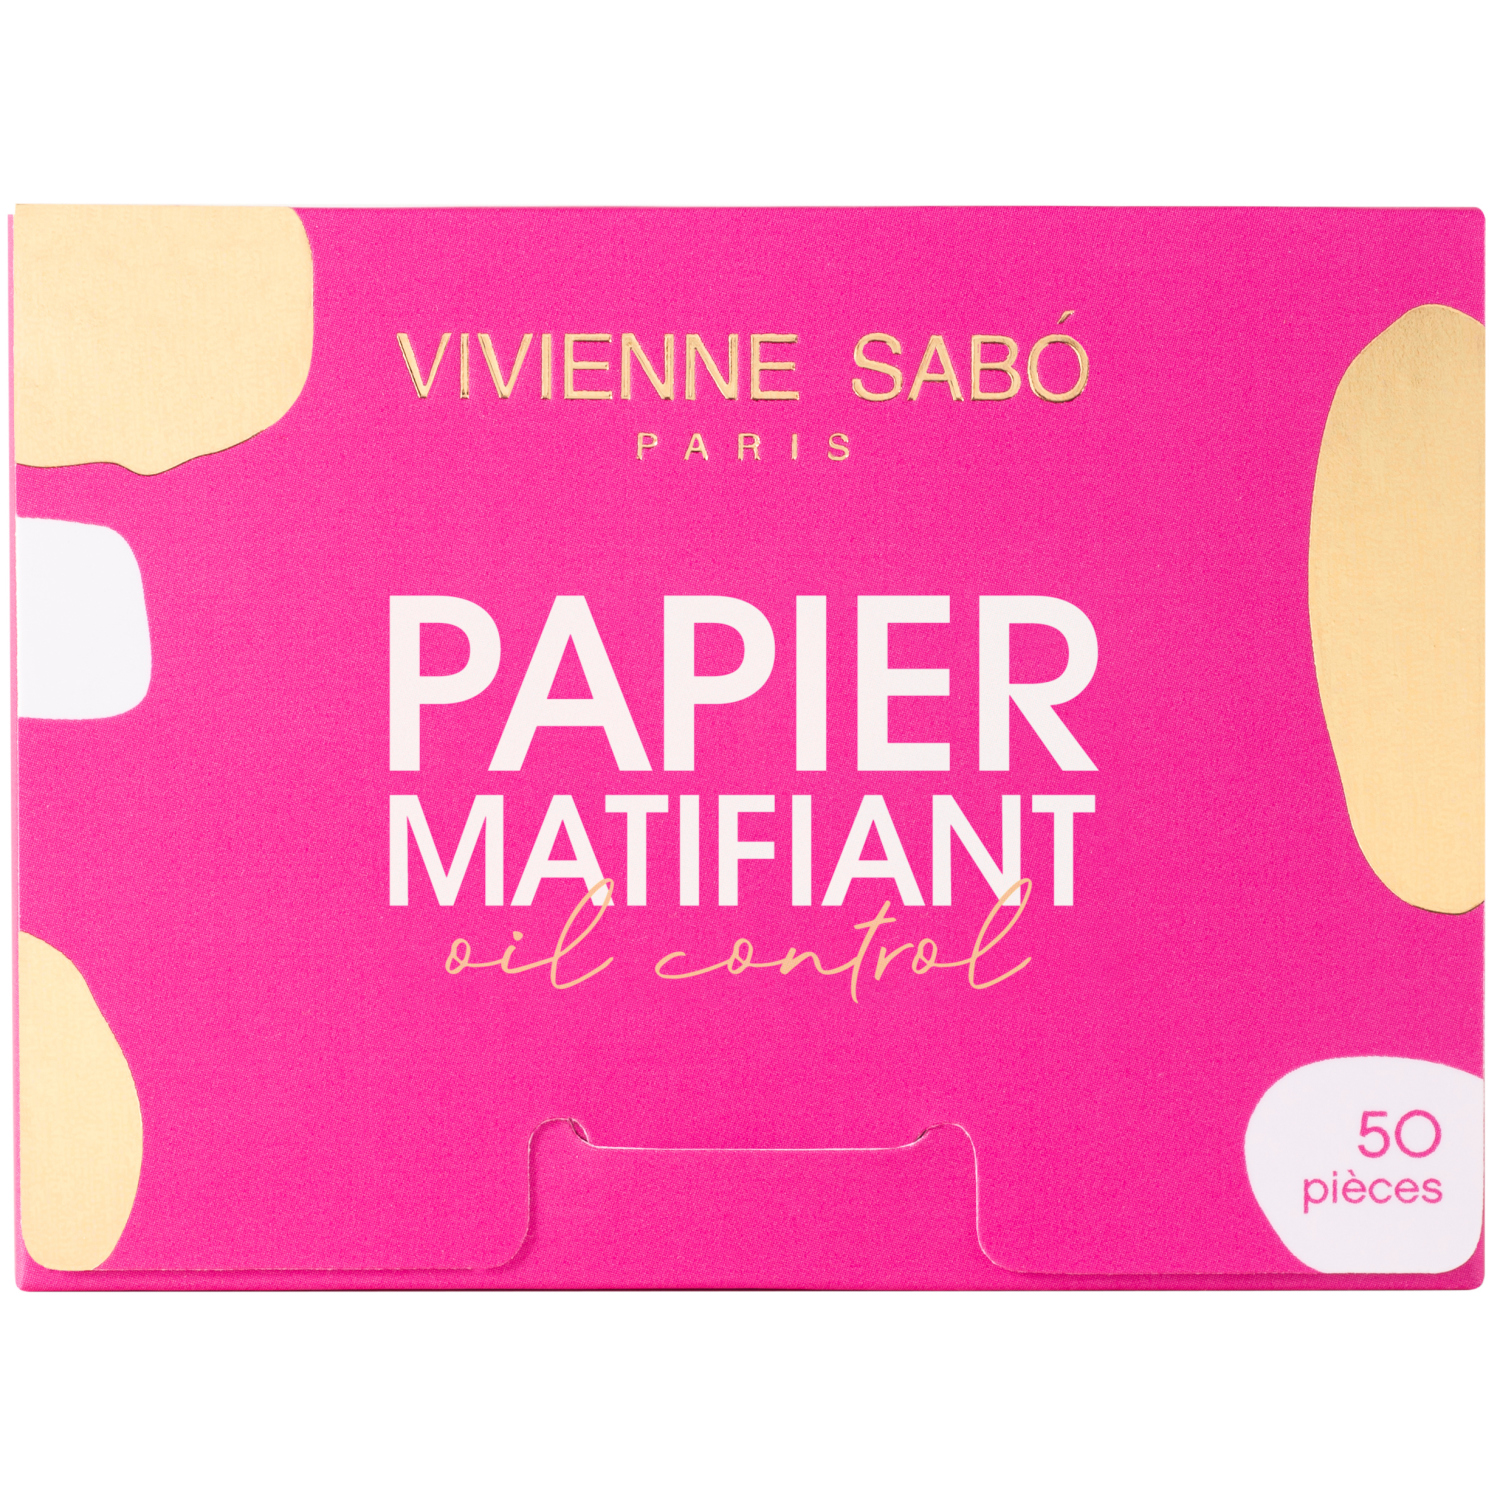 Матирующие салфетки Vivienne Sabo Papier Matifiant, моментальное удаление жирного блеска, прозрачно-розоватые, 50шт. салфетки до блеска